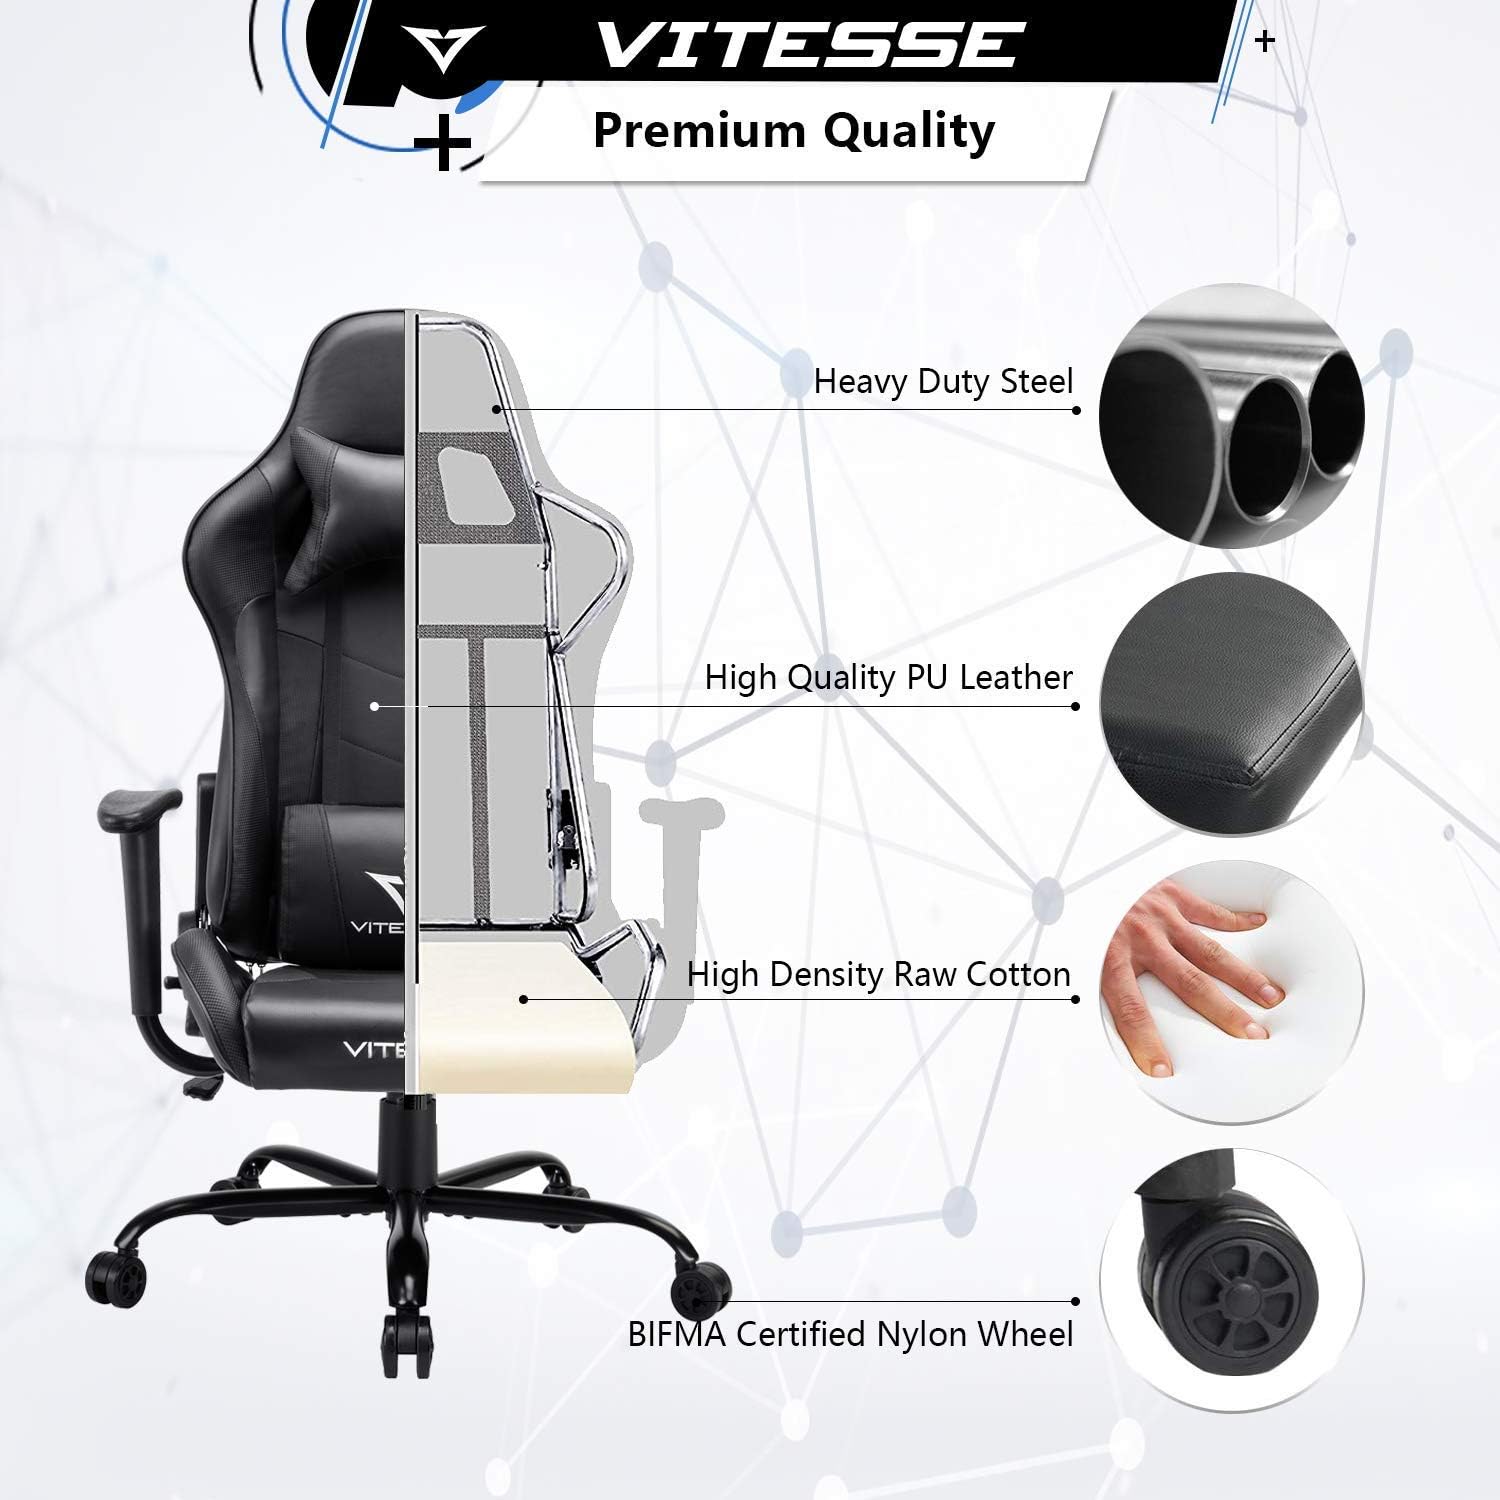 Silla de computadora VIT para videojuegos con respaldo alto de PC, ergonómica